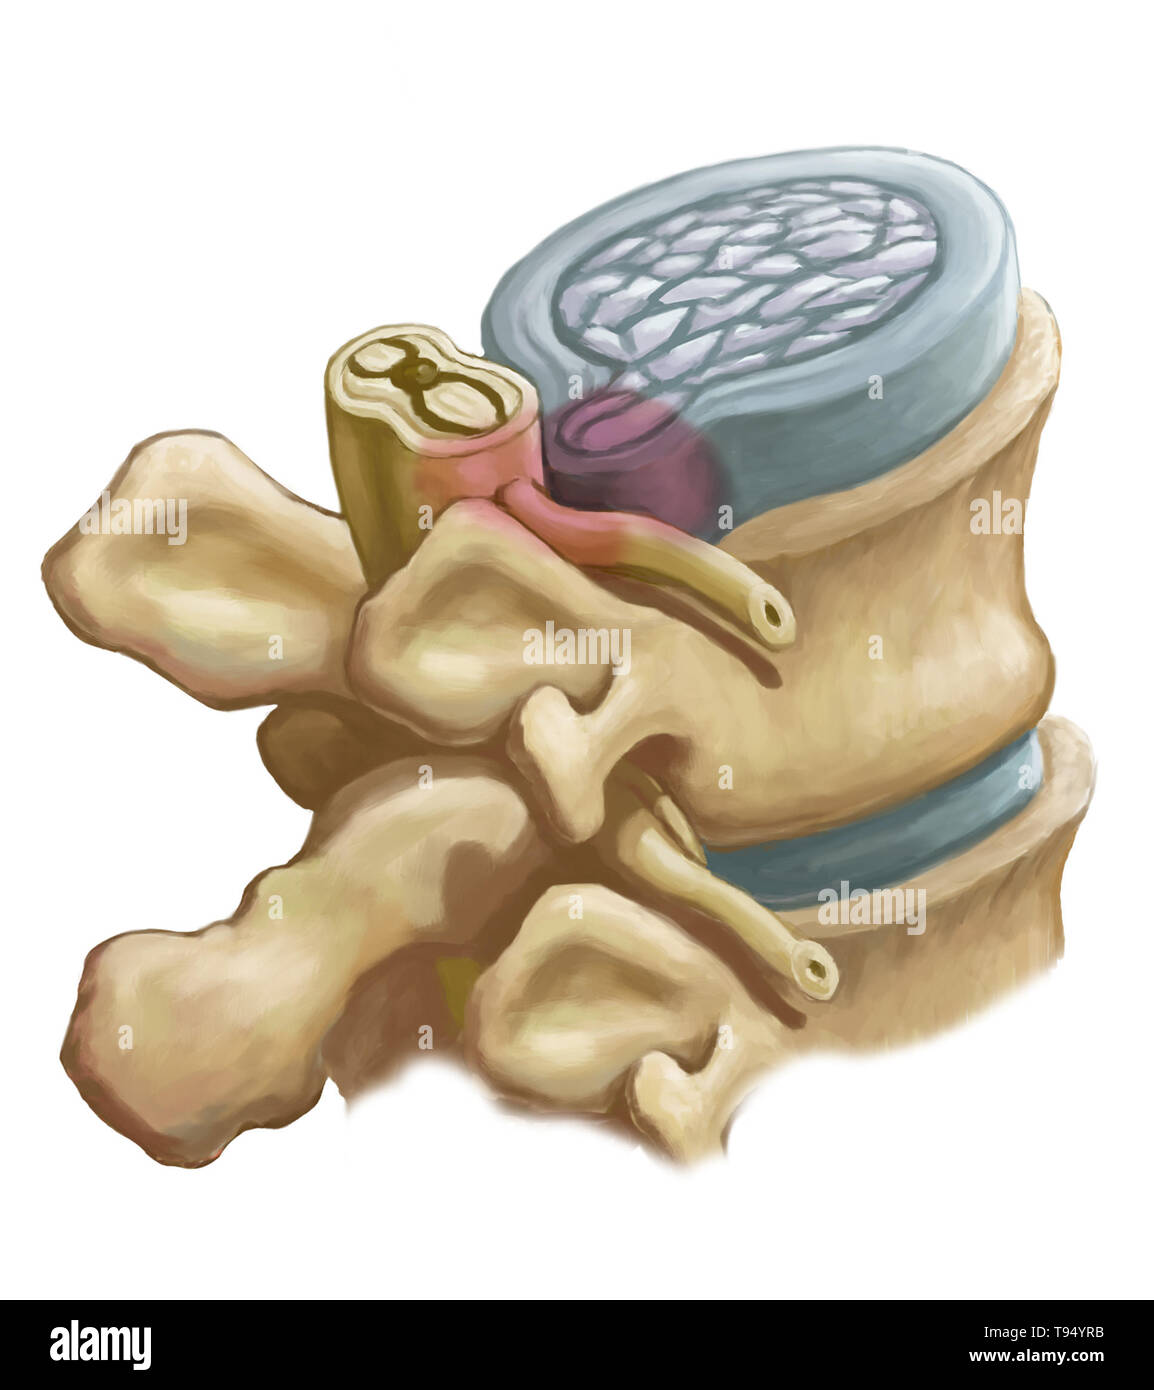 Eine Abbildung der Bandscheibenvorfall eine Bandscheiben in der Lendenwirbelsäule. Personen leiden unter einem Bandscheibenvorfall, wenn die äußere fibrösem Gewebe der Festplatte, bekannt als der Anulus fibrosus können durch Trauma oder Alter, bersten. Als ein Ergebnis, das Gel - wie Mitte der Scheibe herausragt, nach außen und drückt die Nerven in der Rückseite, Schwächung der Muskulatur und verursachen schwere lokale Rückenschmerzen. Stockfoto